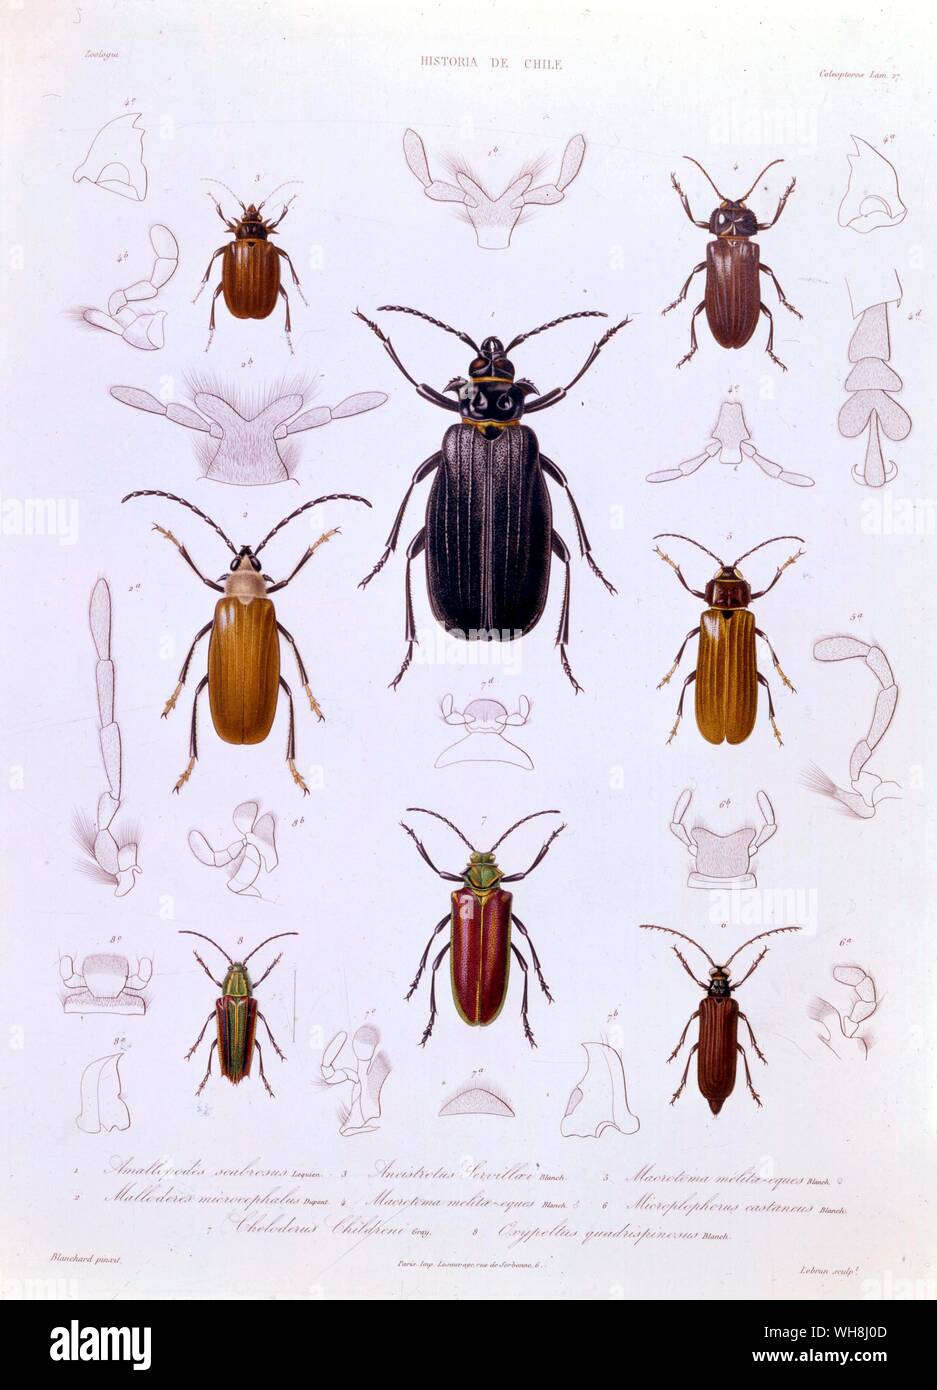 Eine Sammlung der coleoptera in Chile gefunden. Von Darwin und der Beagle von Alan Moorhead, Seite 162. Stockfoto